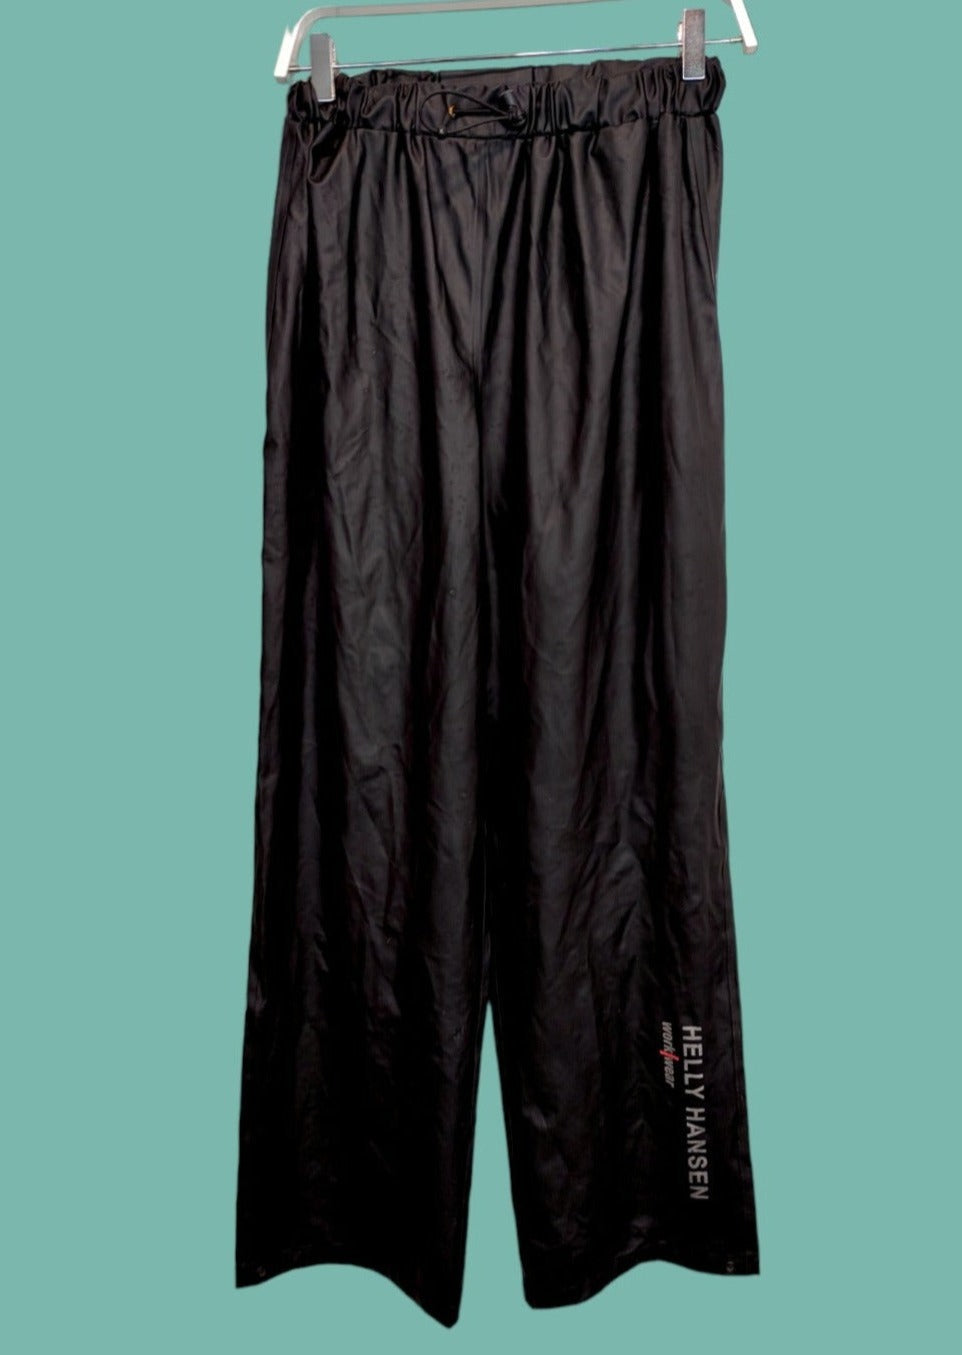 Γυναικείο αδιάβροχο παντελόνι εργασίας από Λάτεξ HELLY HANSEN σε Μαύρο χρώμα (S/M)